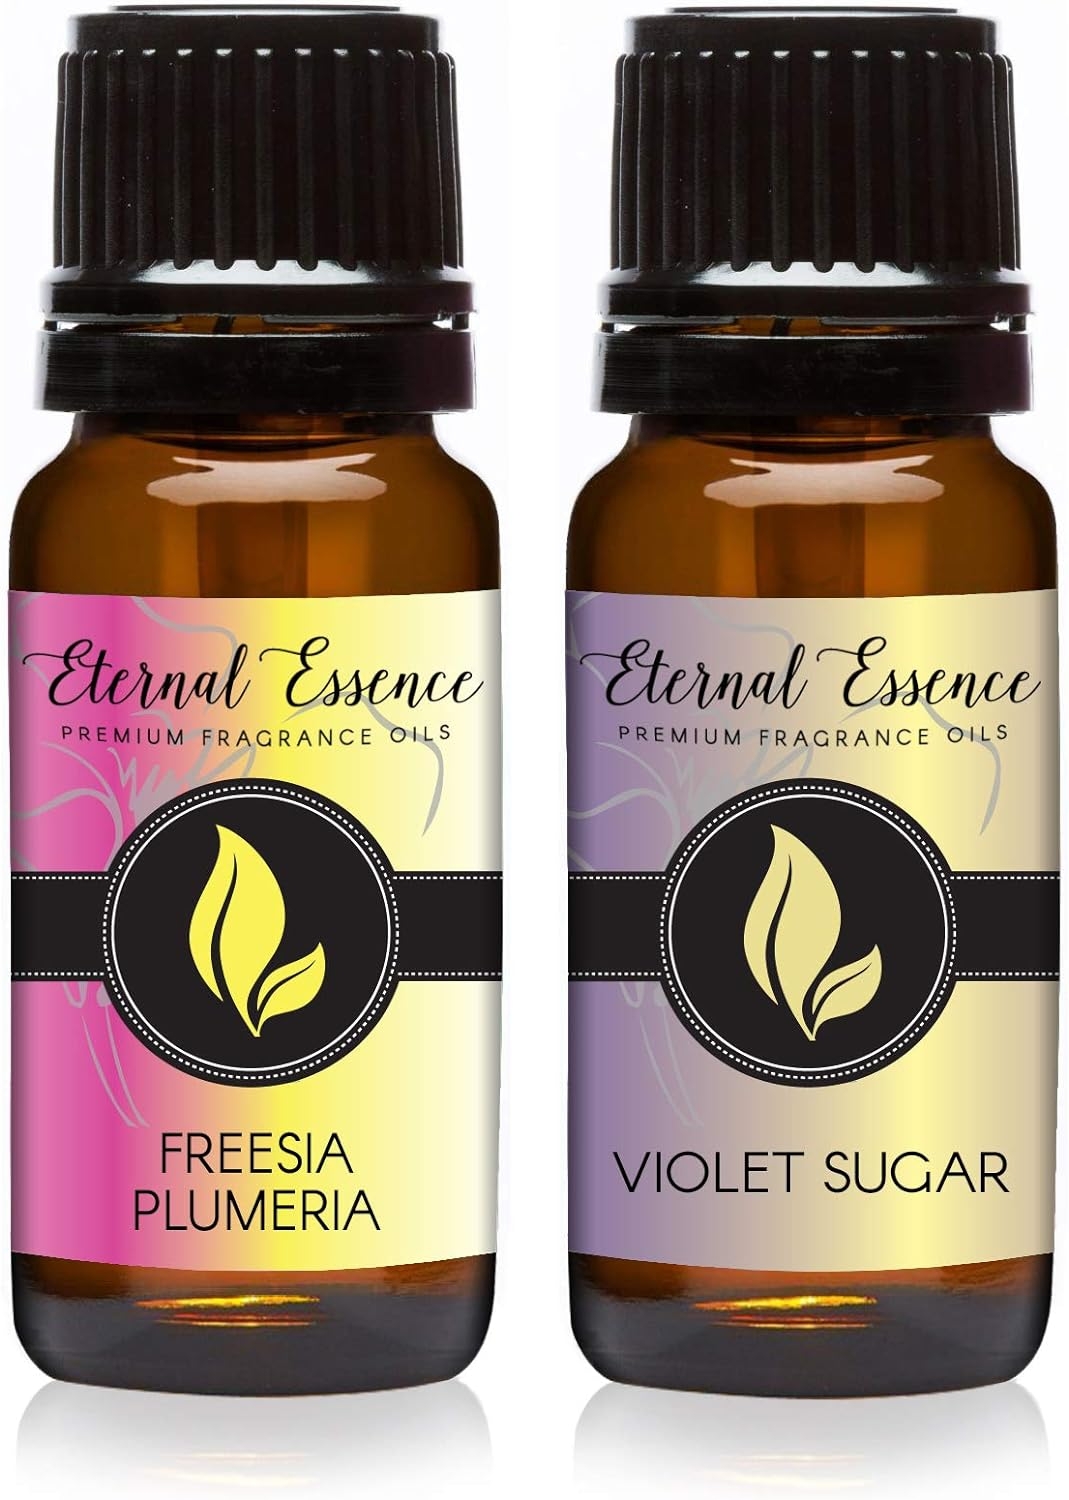 Freesia Plumeria & Violet Sugar